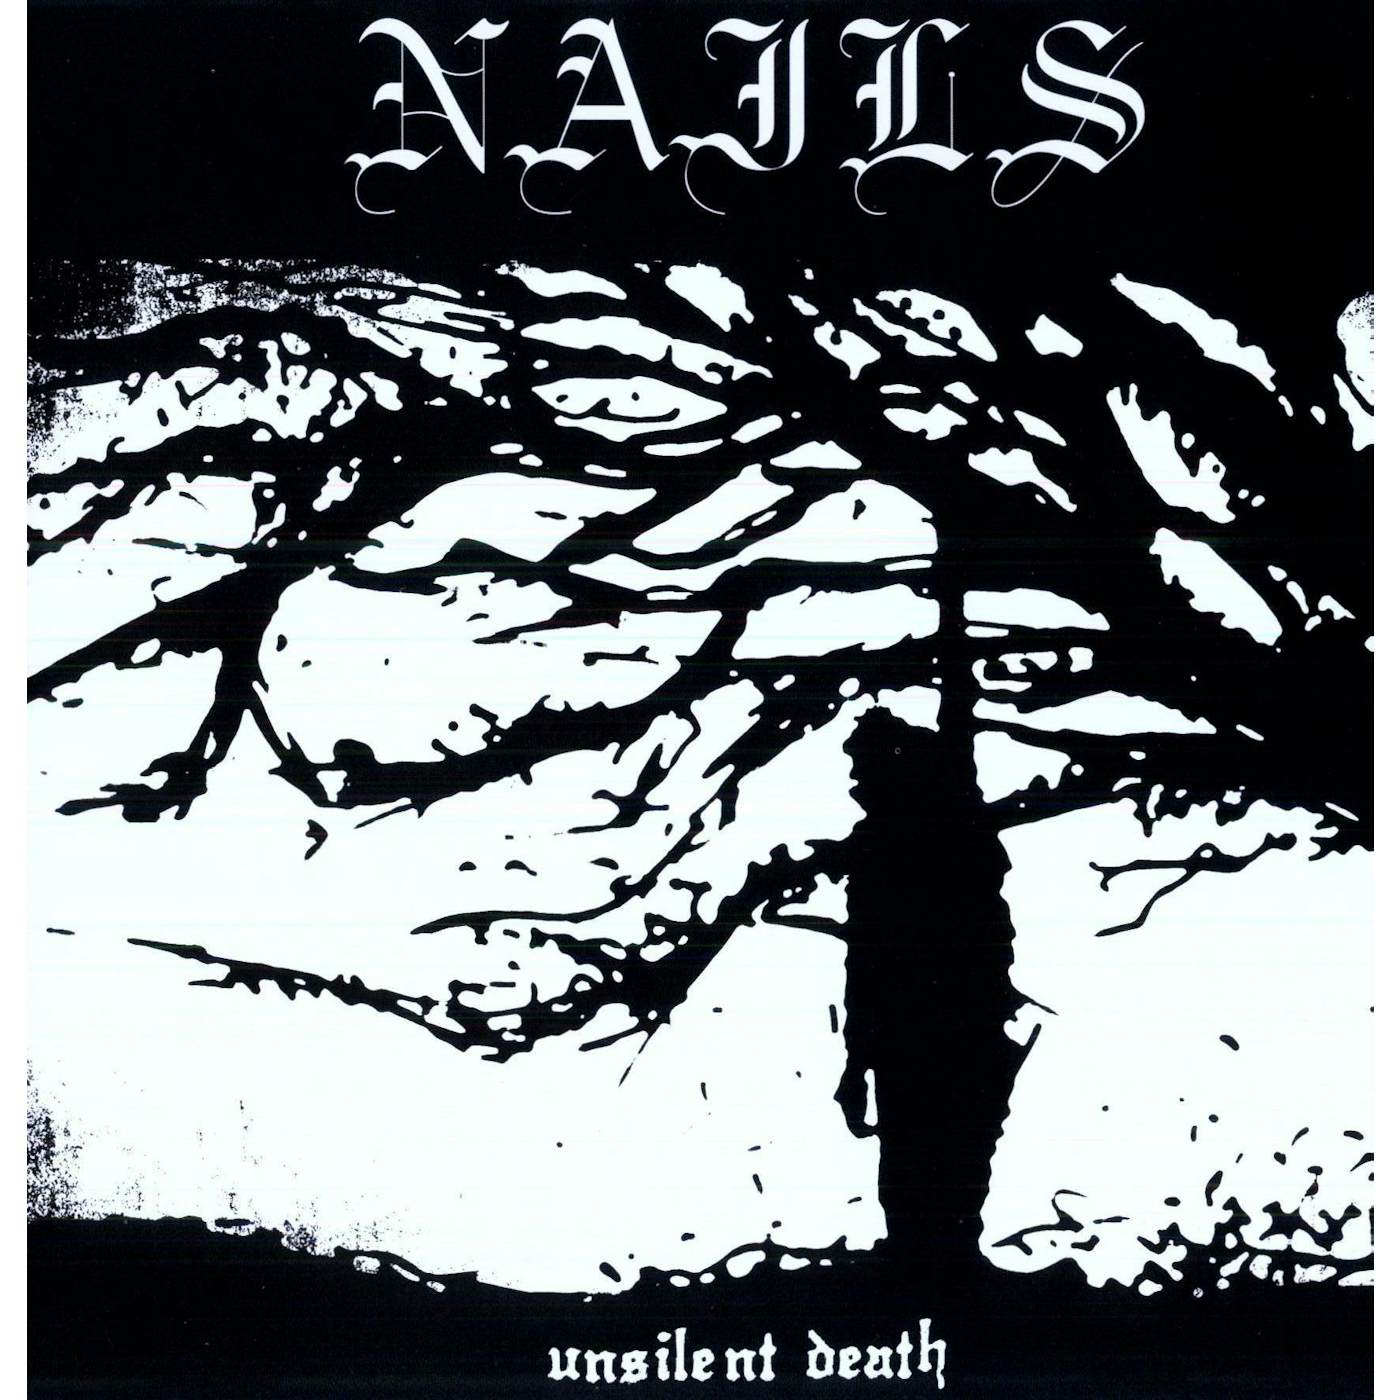 Nails Unsilent Death Vinyl Record